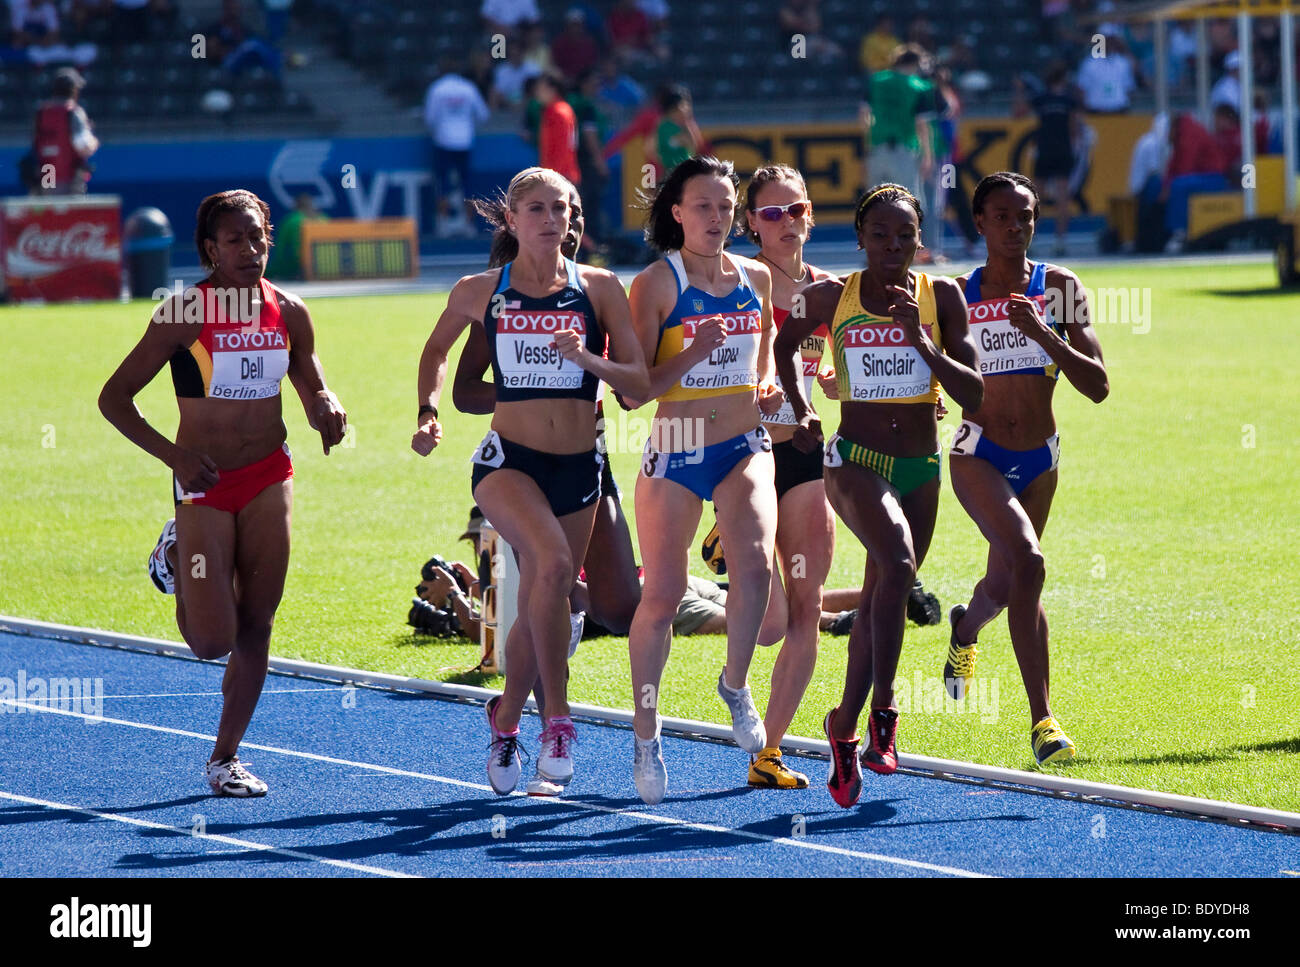 Dans la chaleur de la femme au 800 mètres aux Championnats du monde d'athlétisme 2009 à Berlin, Allemagne, Europe Banque D'Images